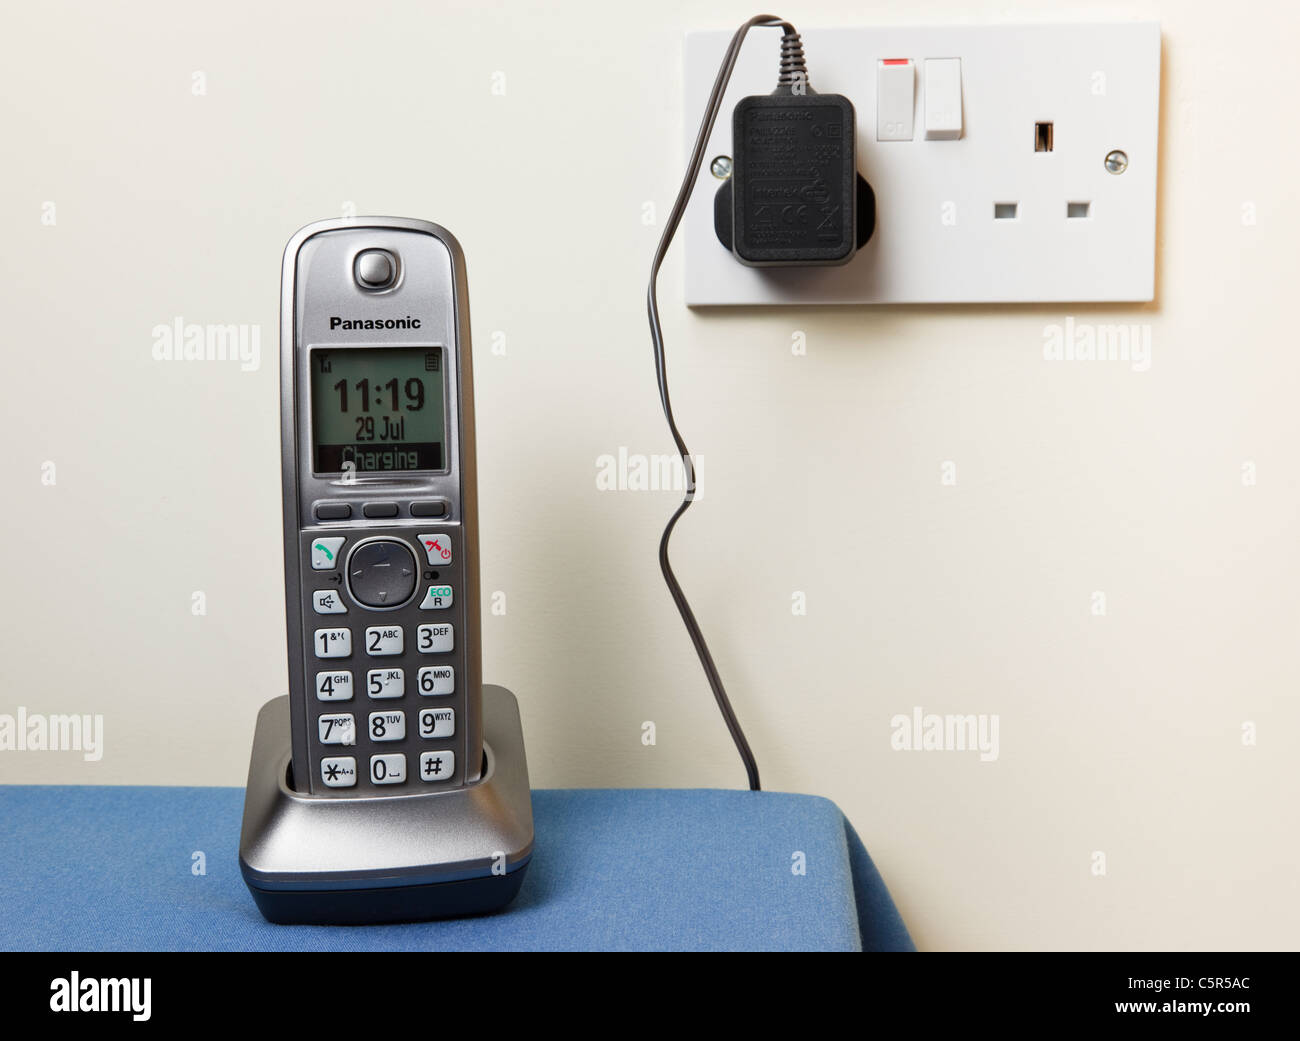 Panasonic moderne kabellose digitale Telefon Mobilteil Aufladen auf einem  Handy Ladegerät Basiseinheit angeschlossen an eine Steckdose an. England  Großbritannien Großbritannien Stockfotografie - Alamy